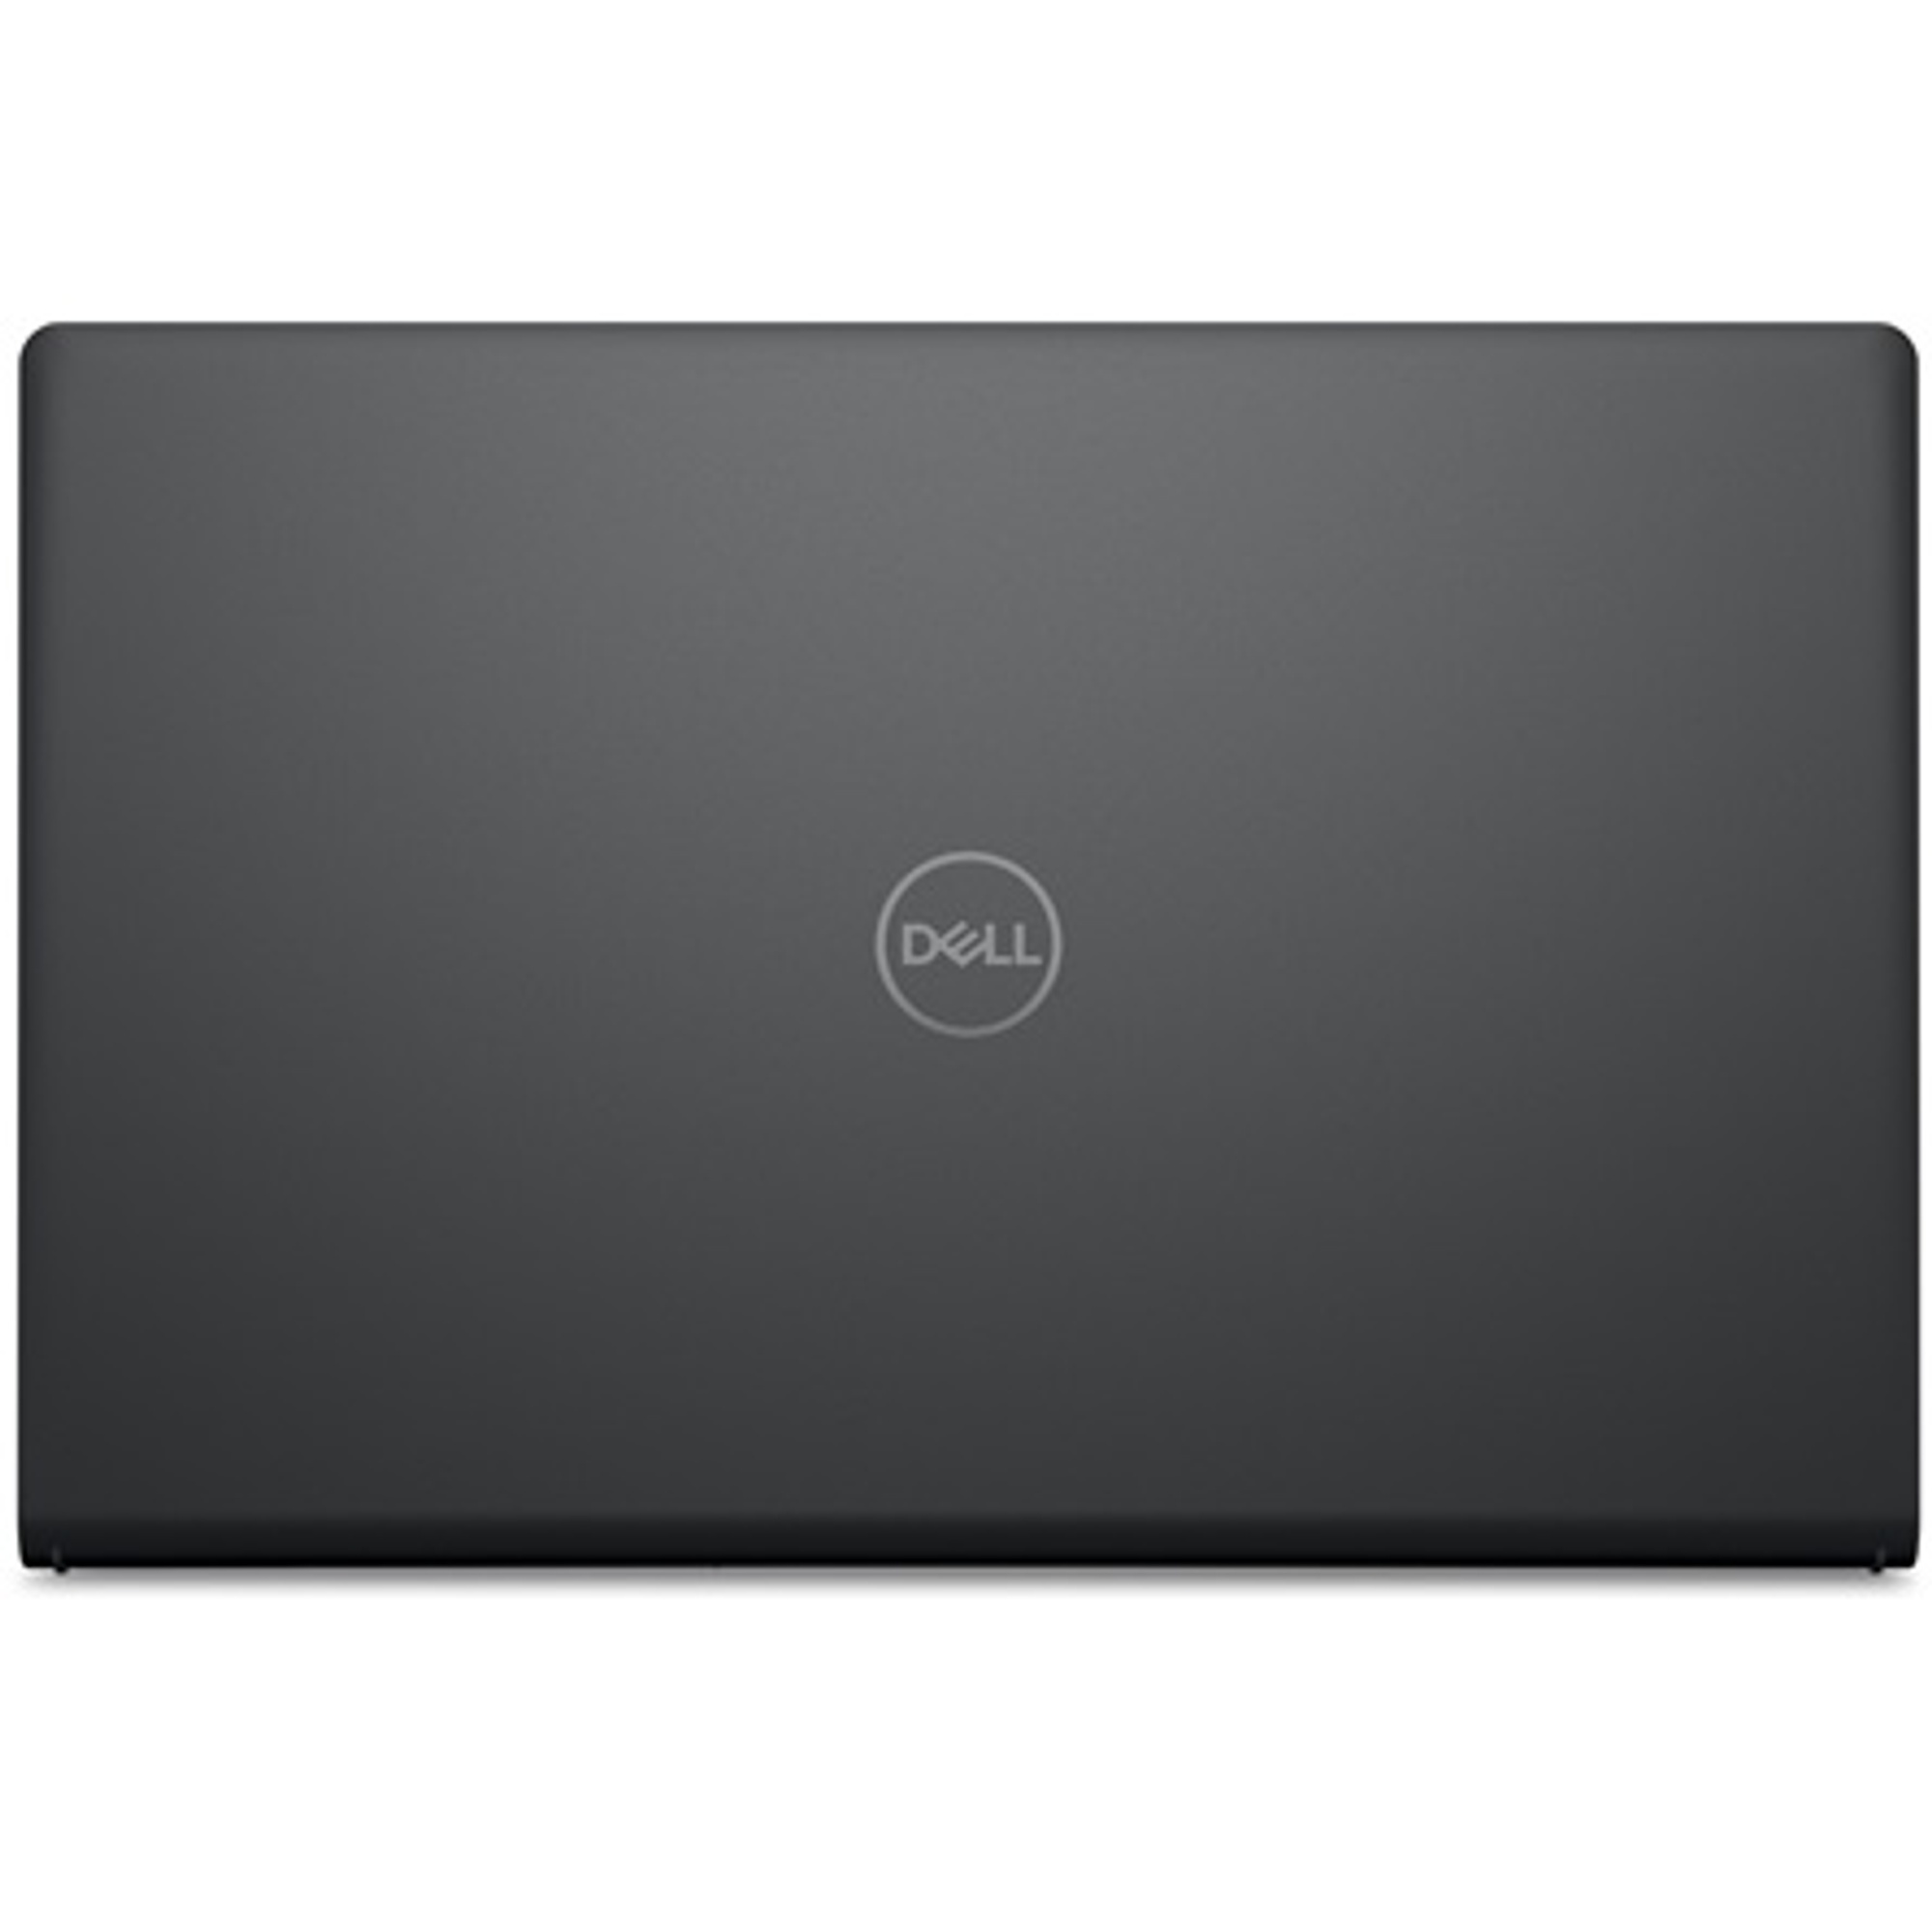 DELL V3520-16 Laptop / Notebook 5